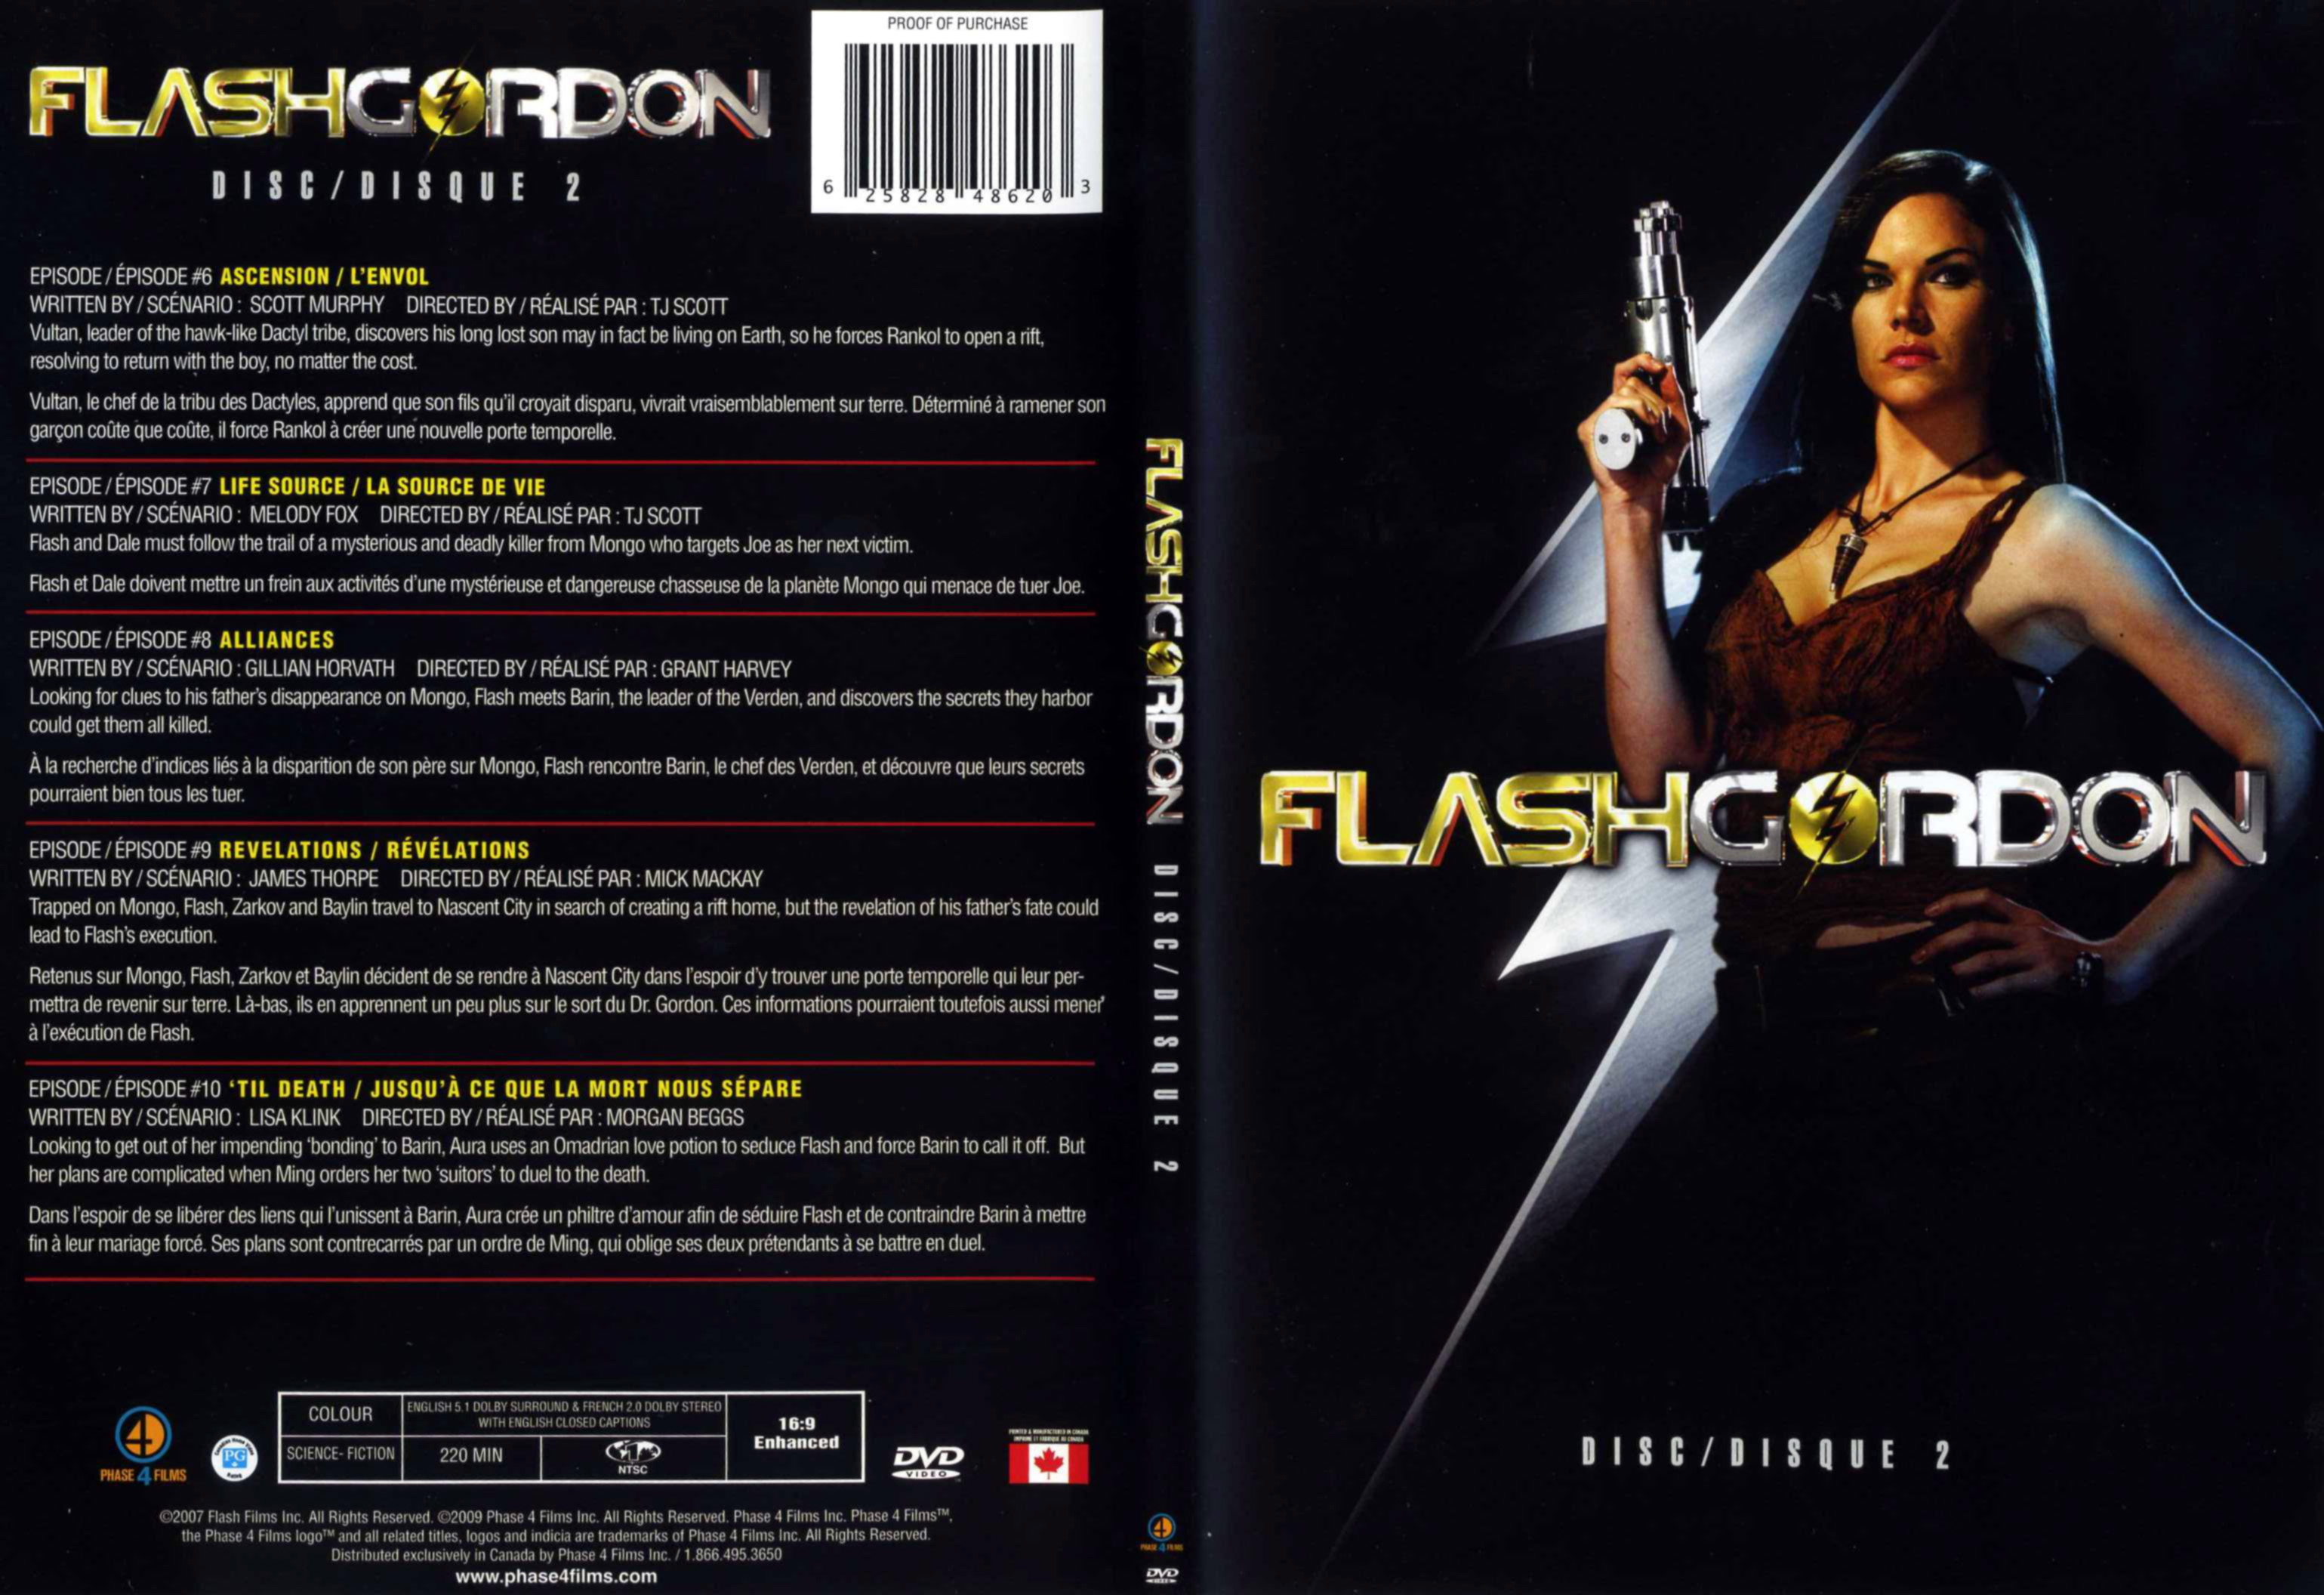 Jaquette DVD Flash Gordon Saison 1 DVD 2